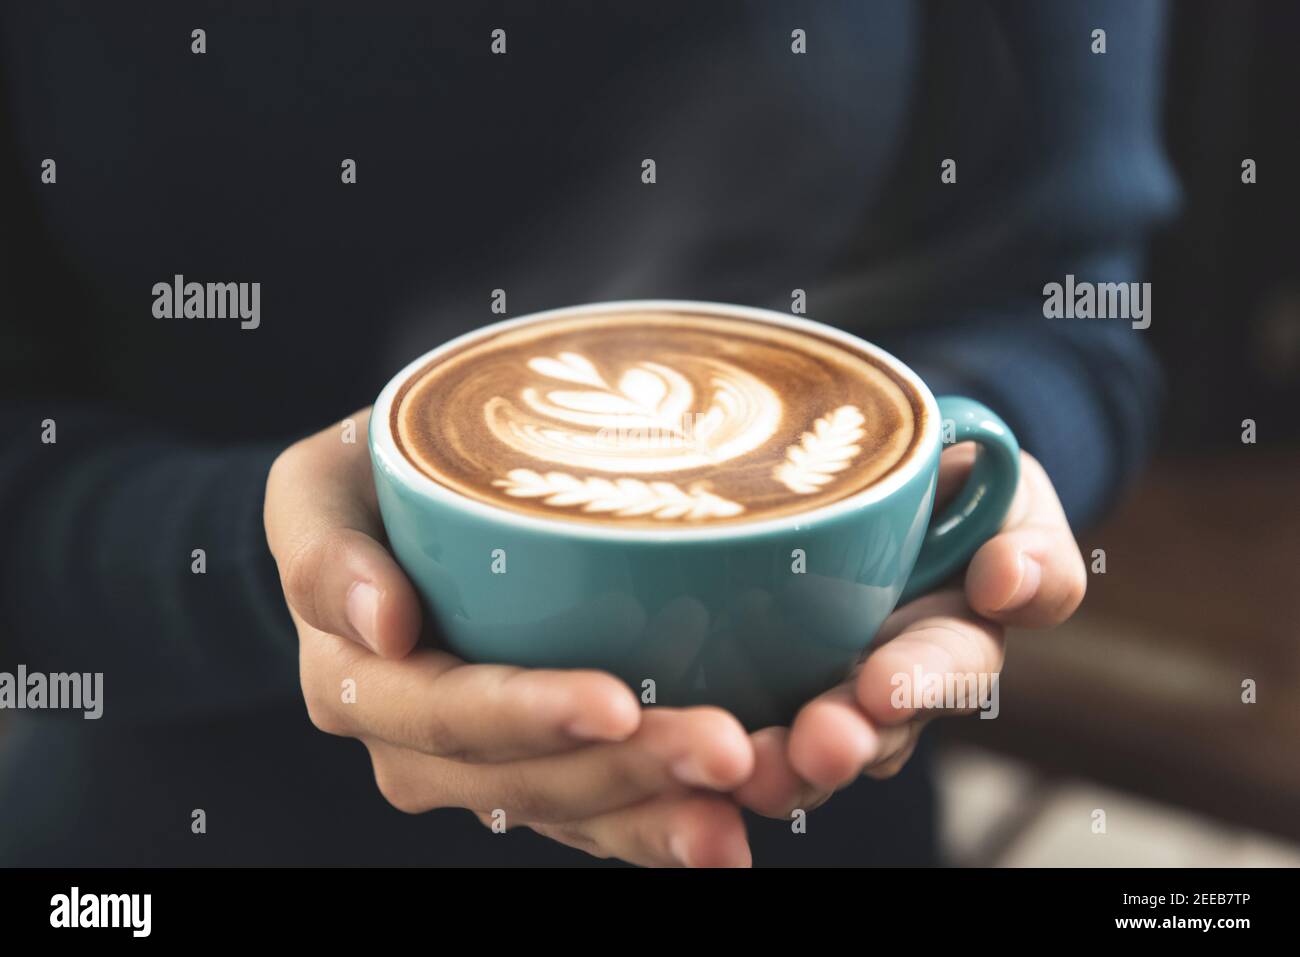 Femme mains tenant une tasse de café avec belle Rosetta latte sur la surface Banque D'Images